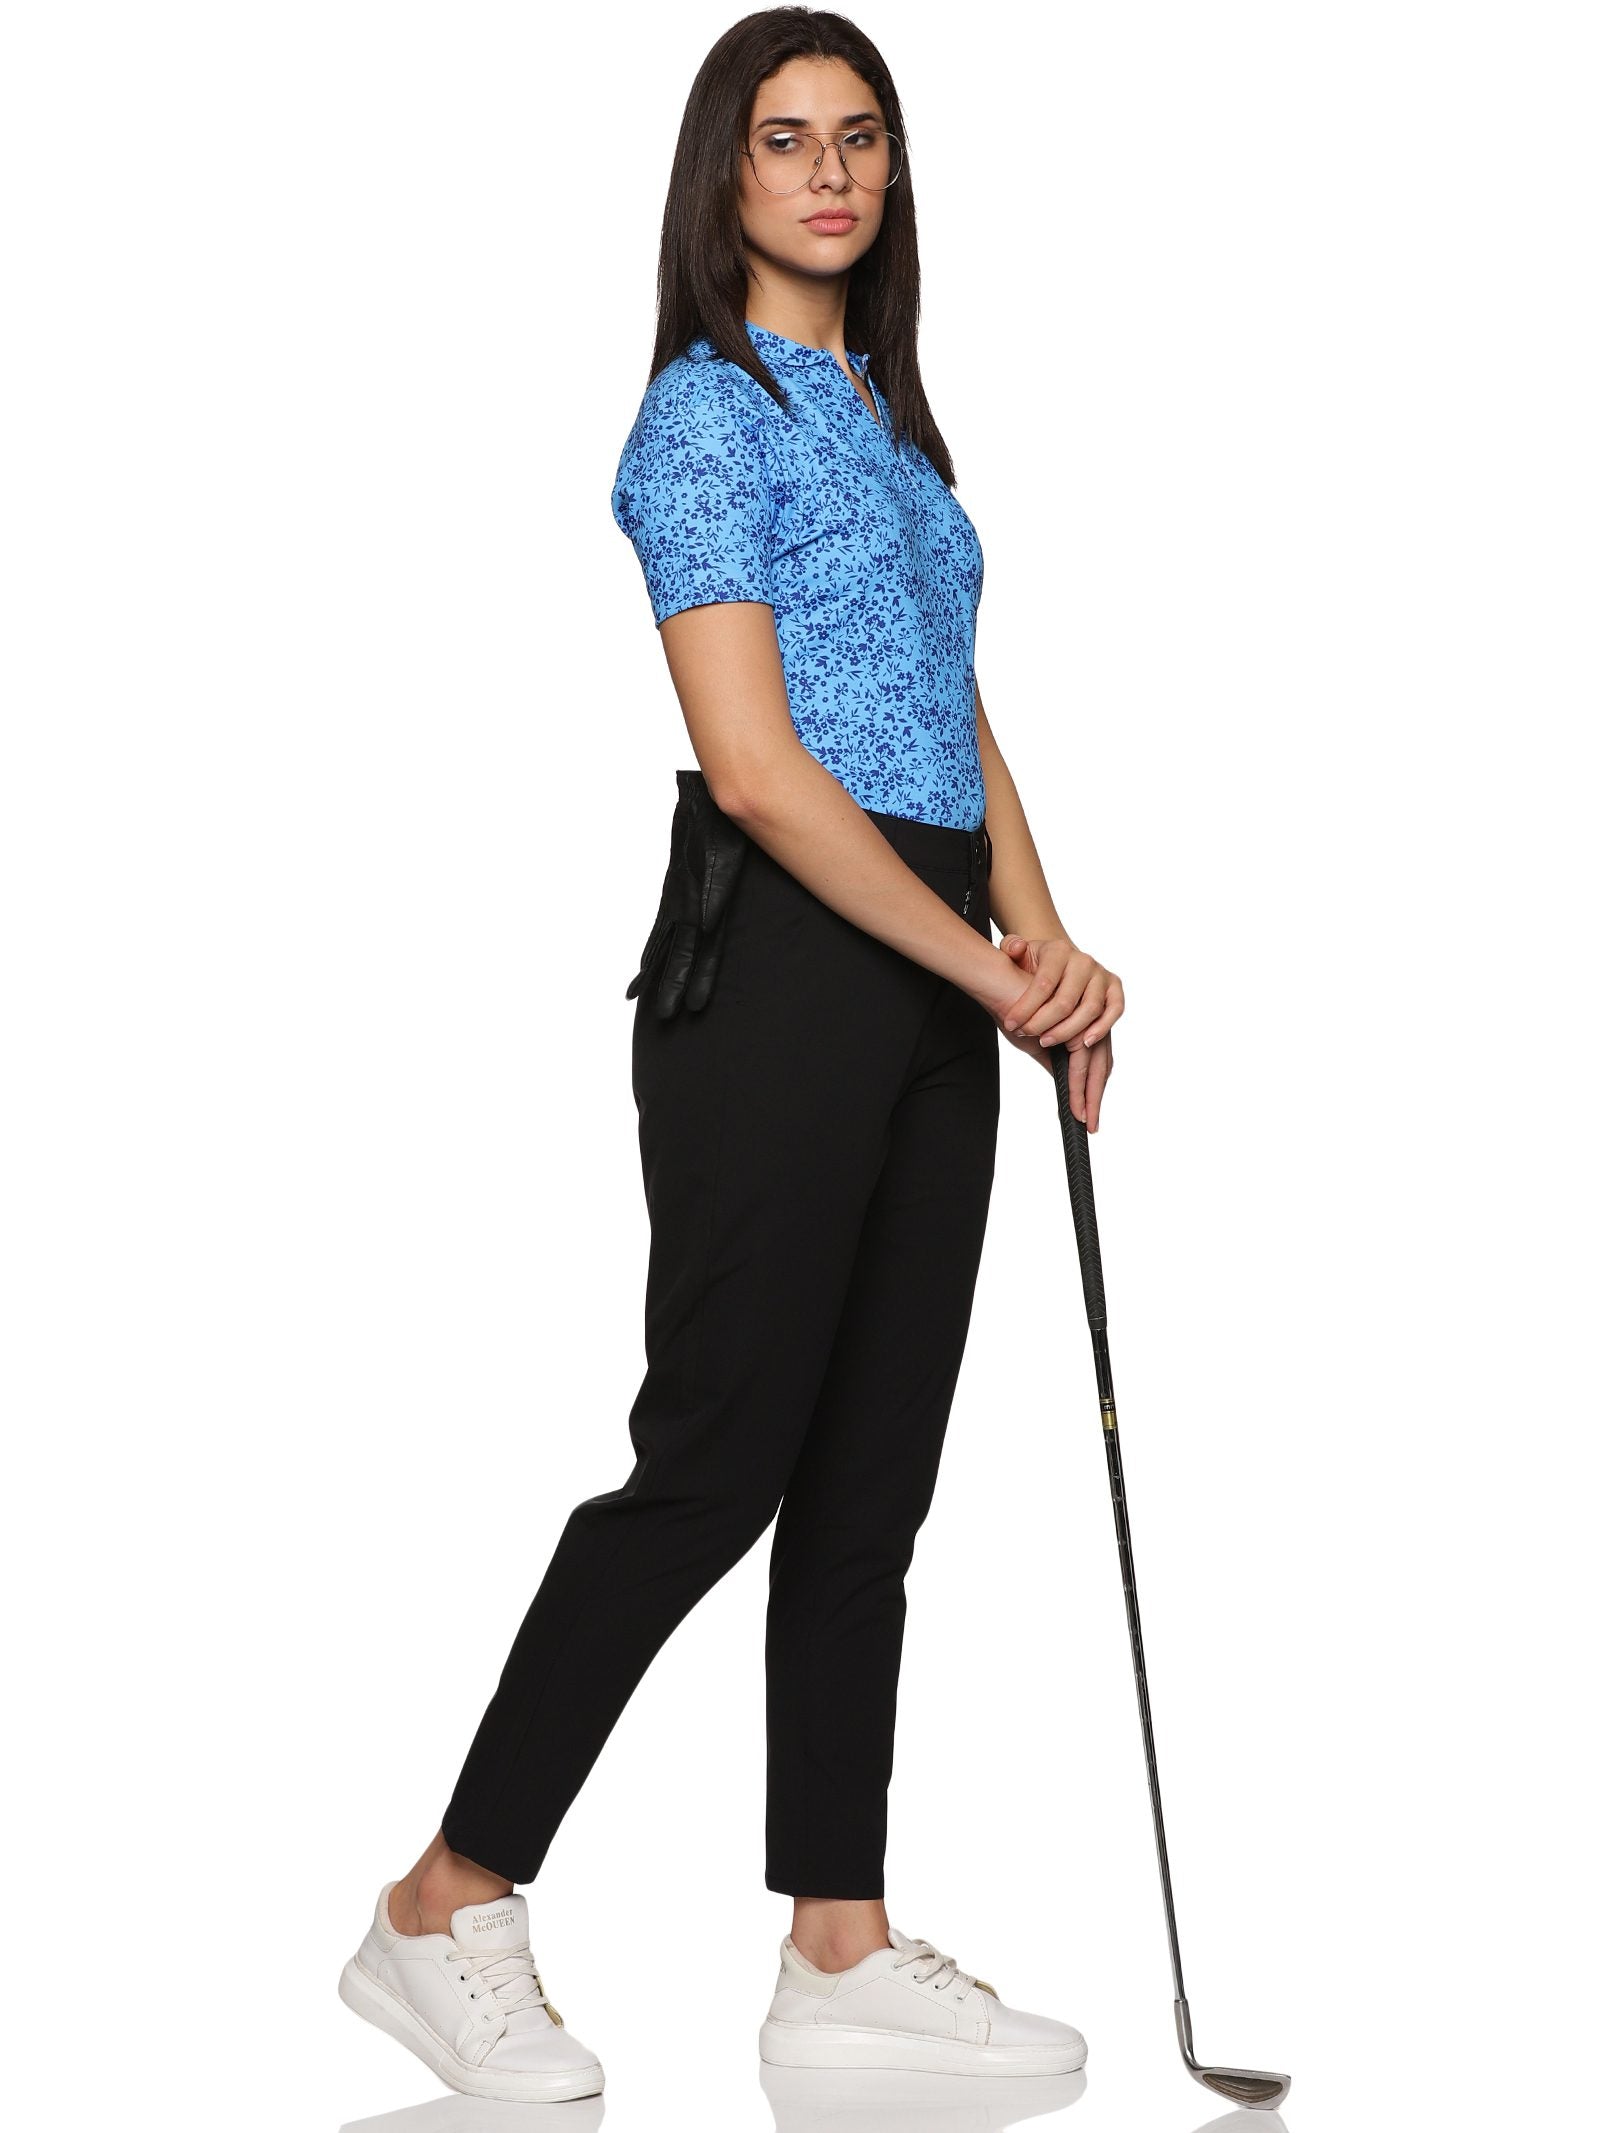 Styzen Womens Active Lite Golf Trousers (Flexi-Waist)